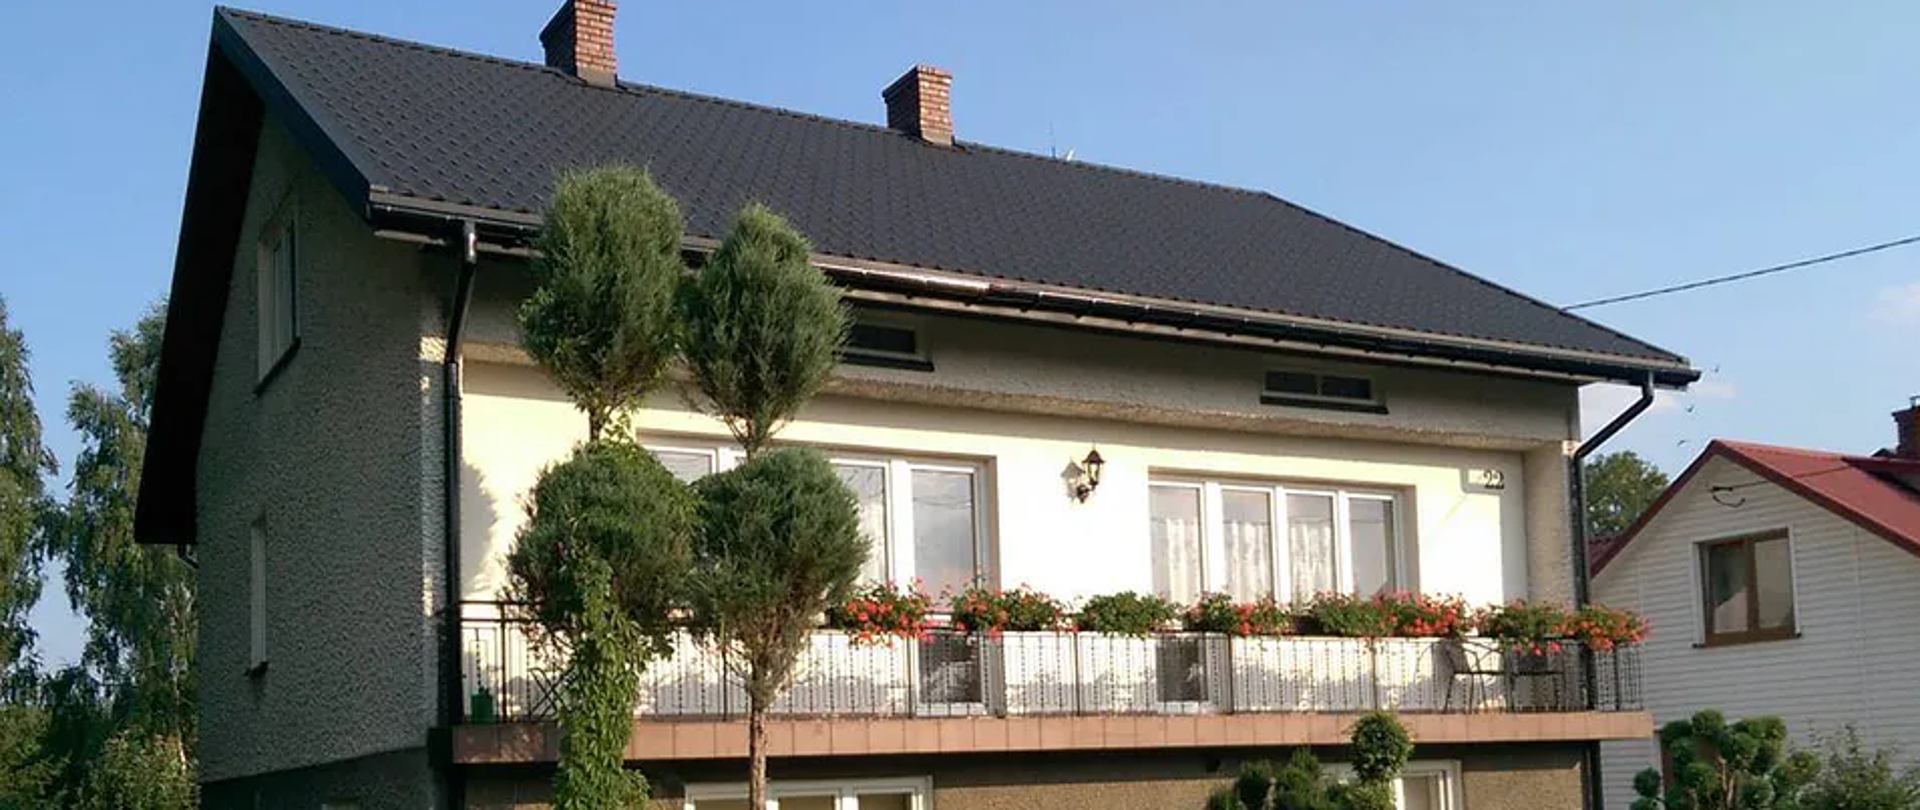 Piętrowy dom z długim balkonem przez szerokość całego domu, przed domem ogród.